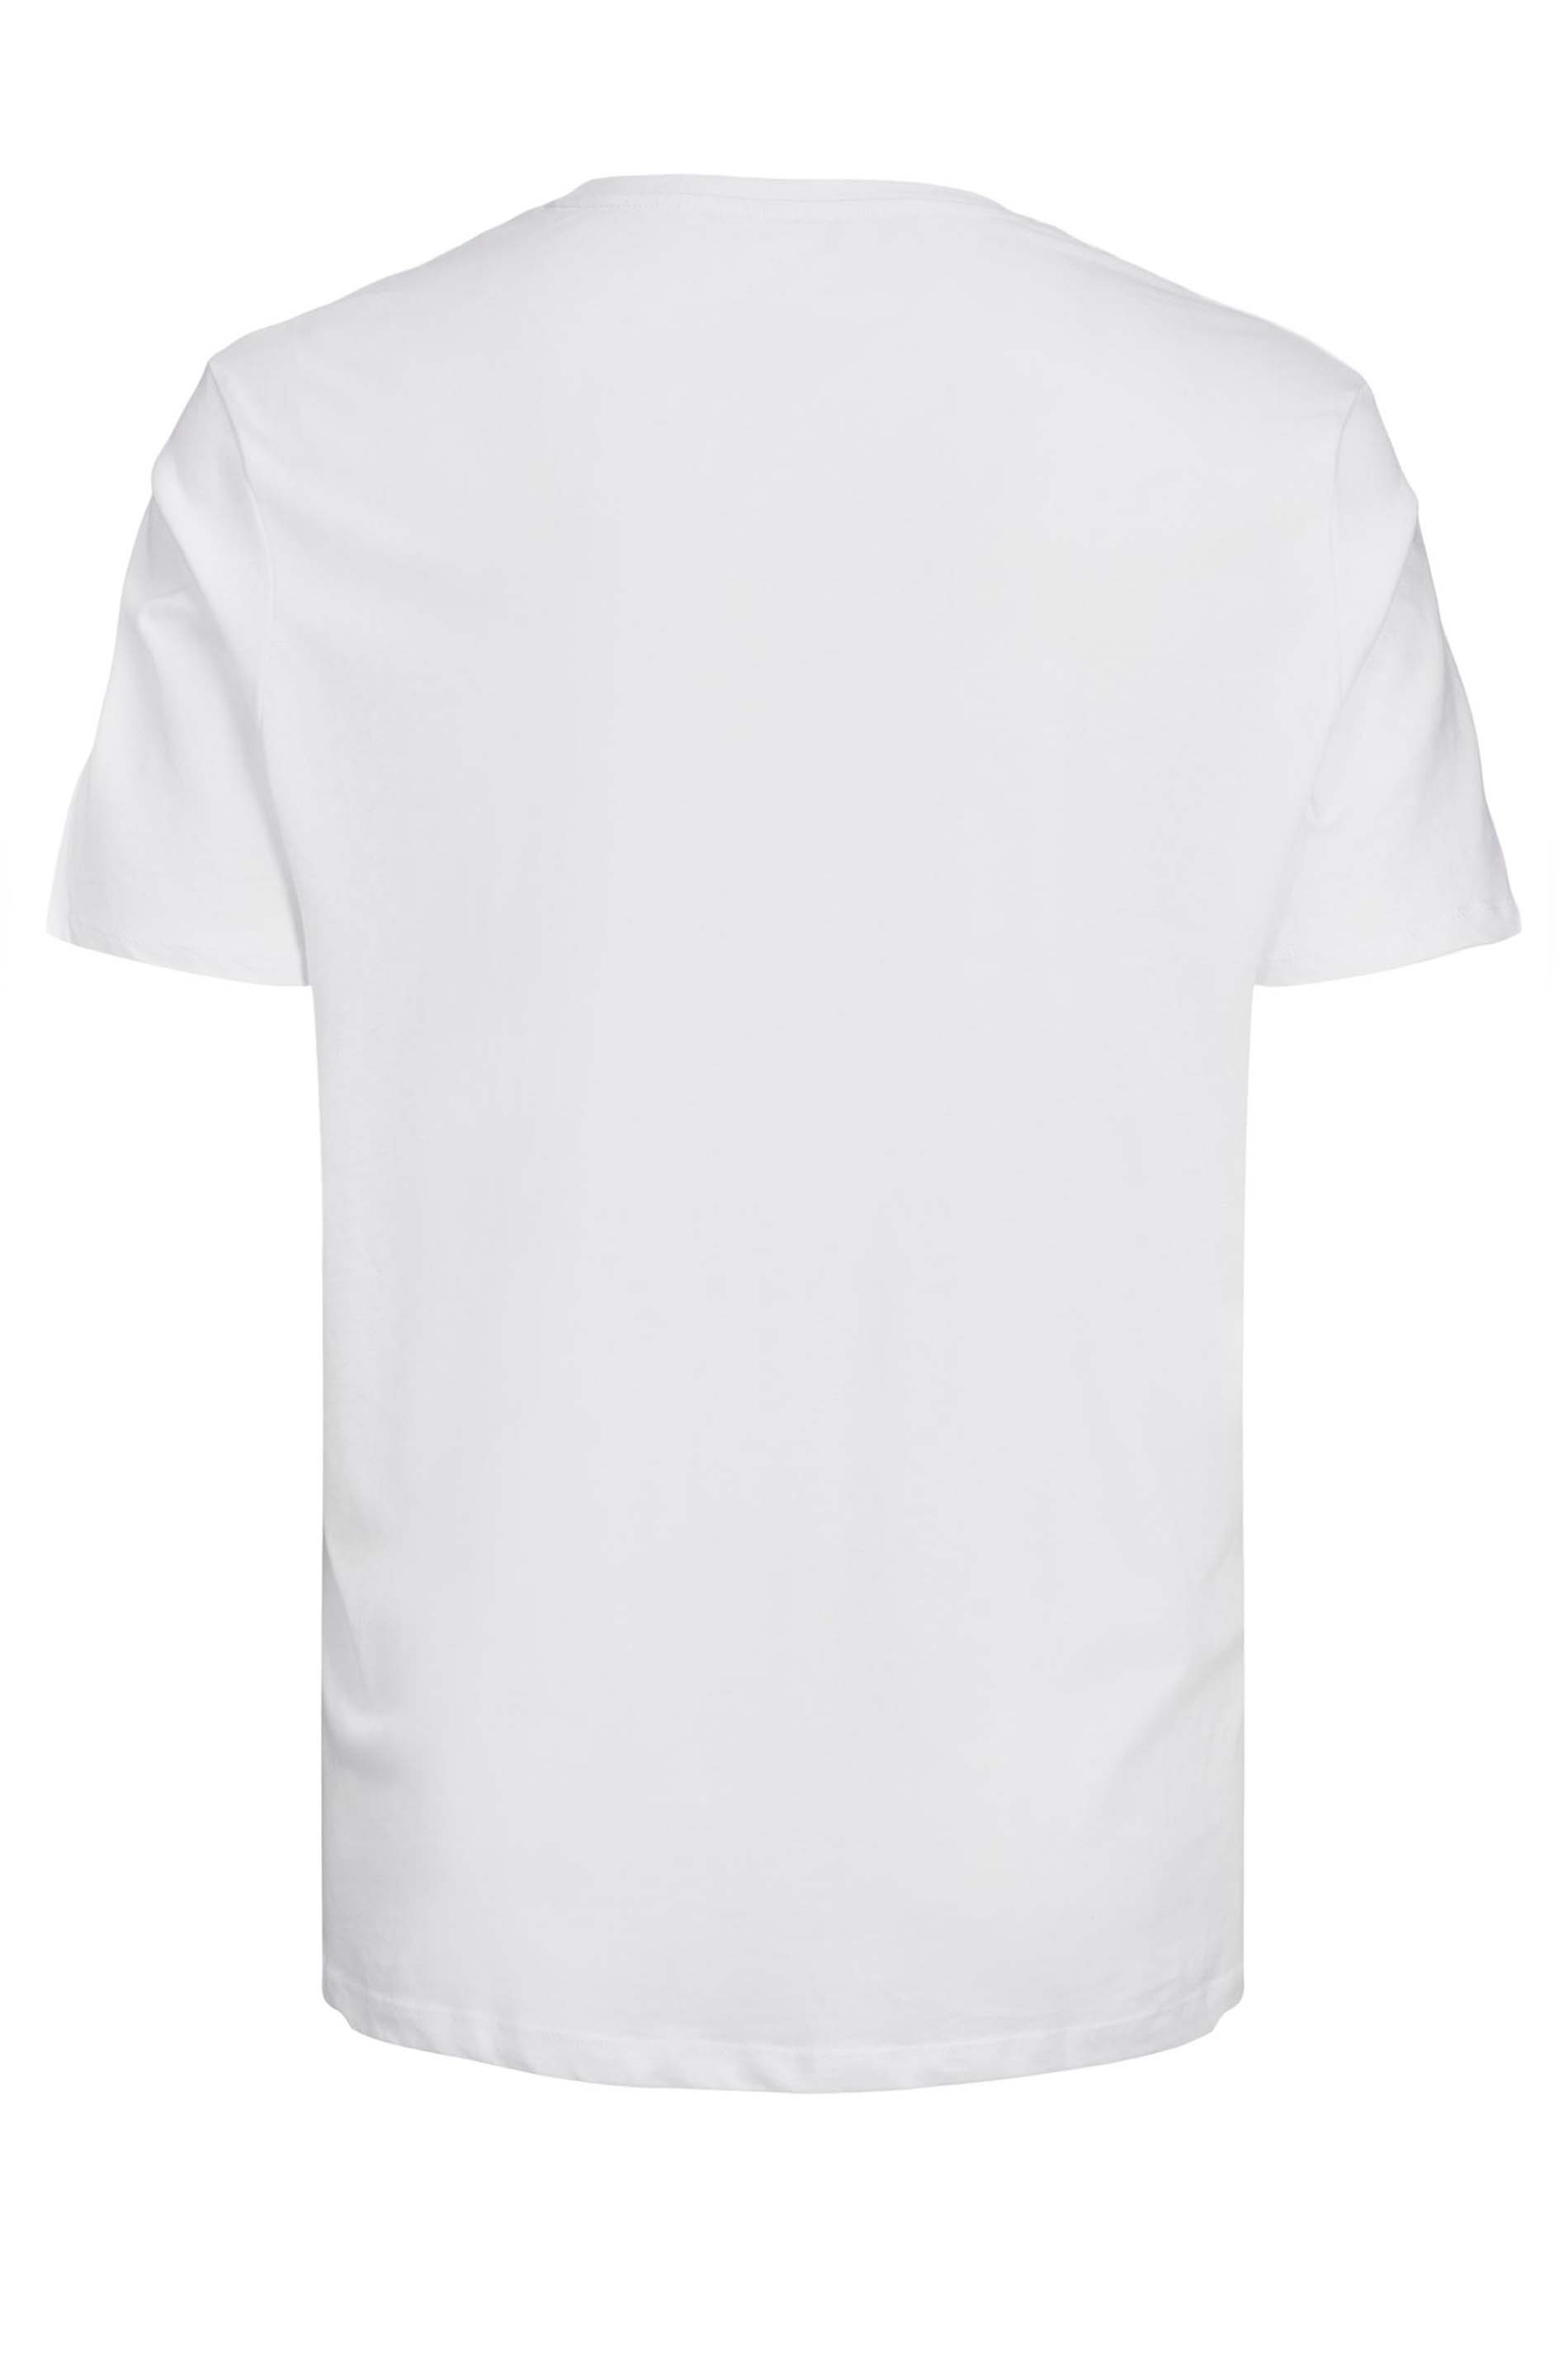 JACK & JONES White Logo T-Shirt, Bad Rhino